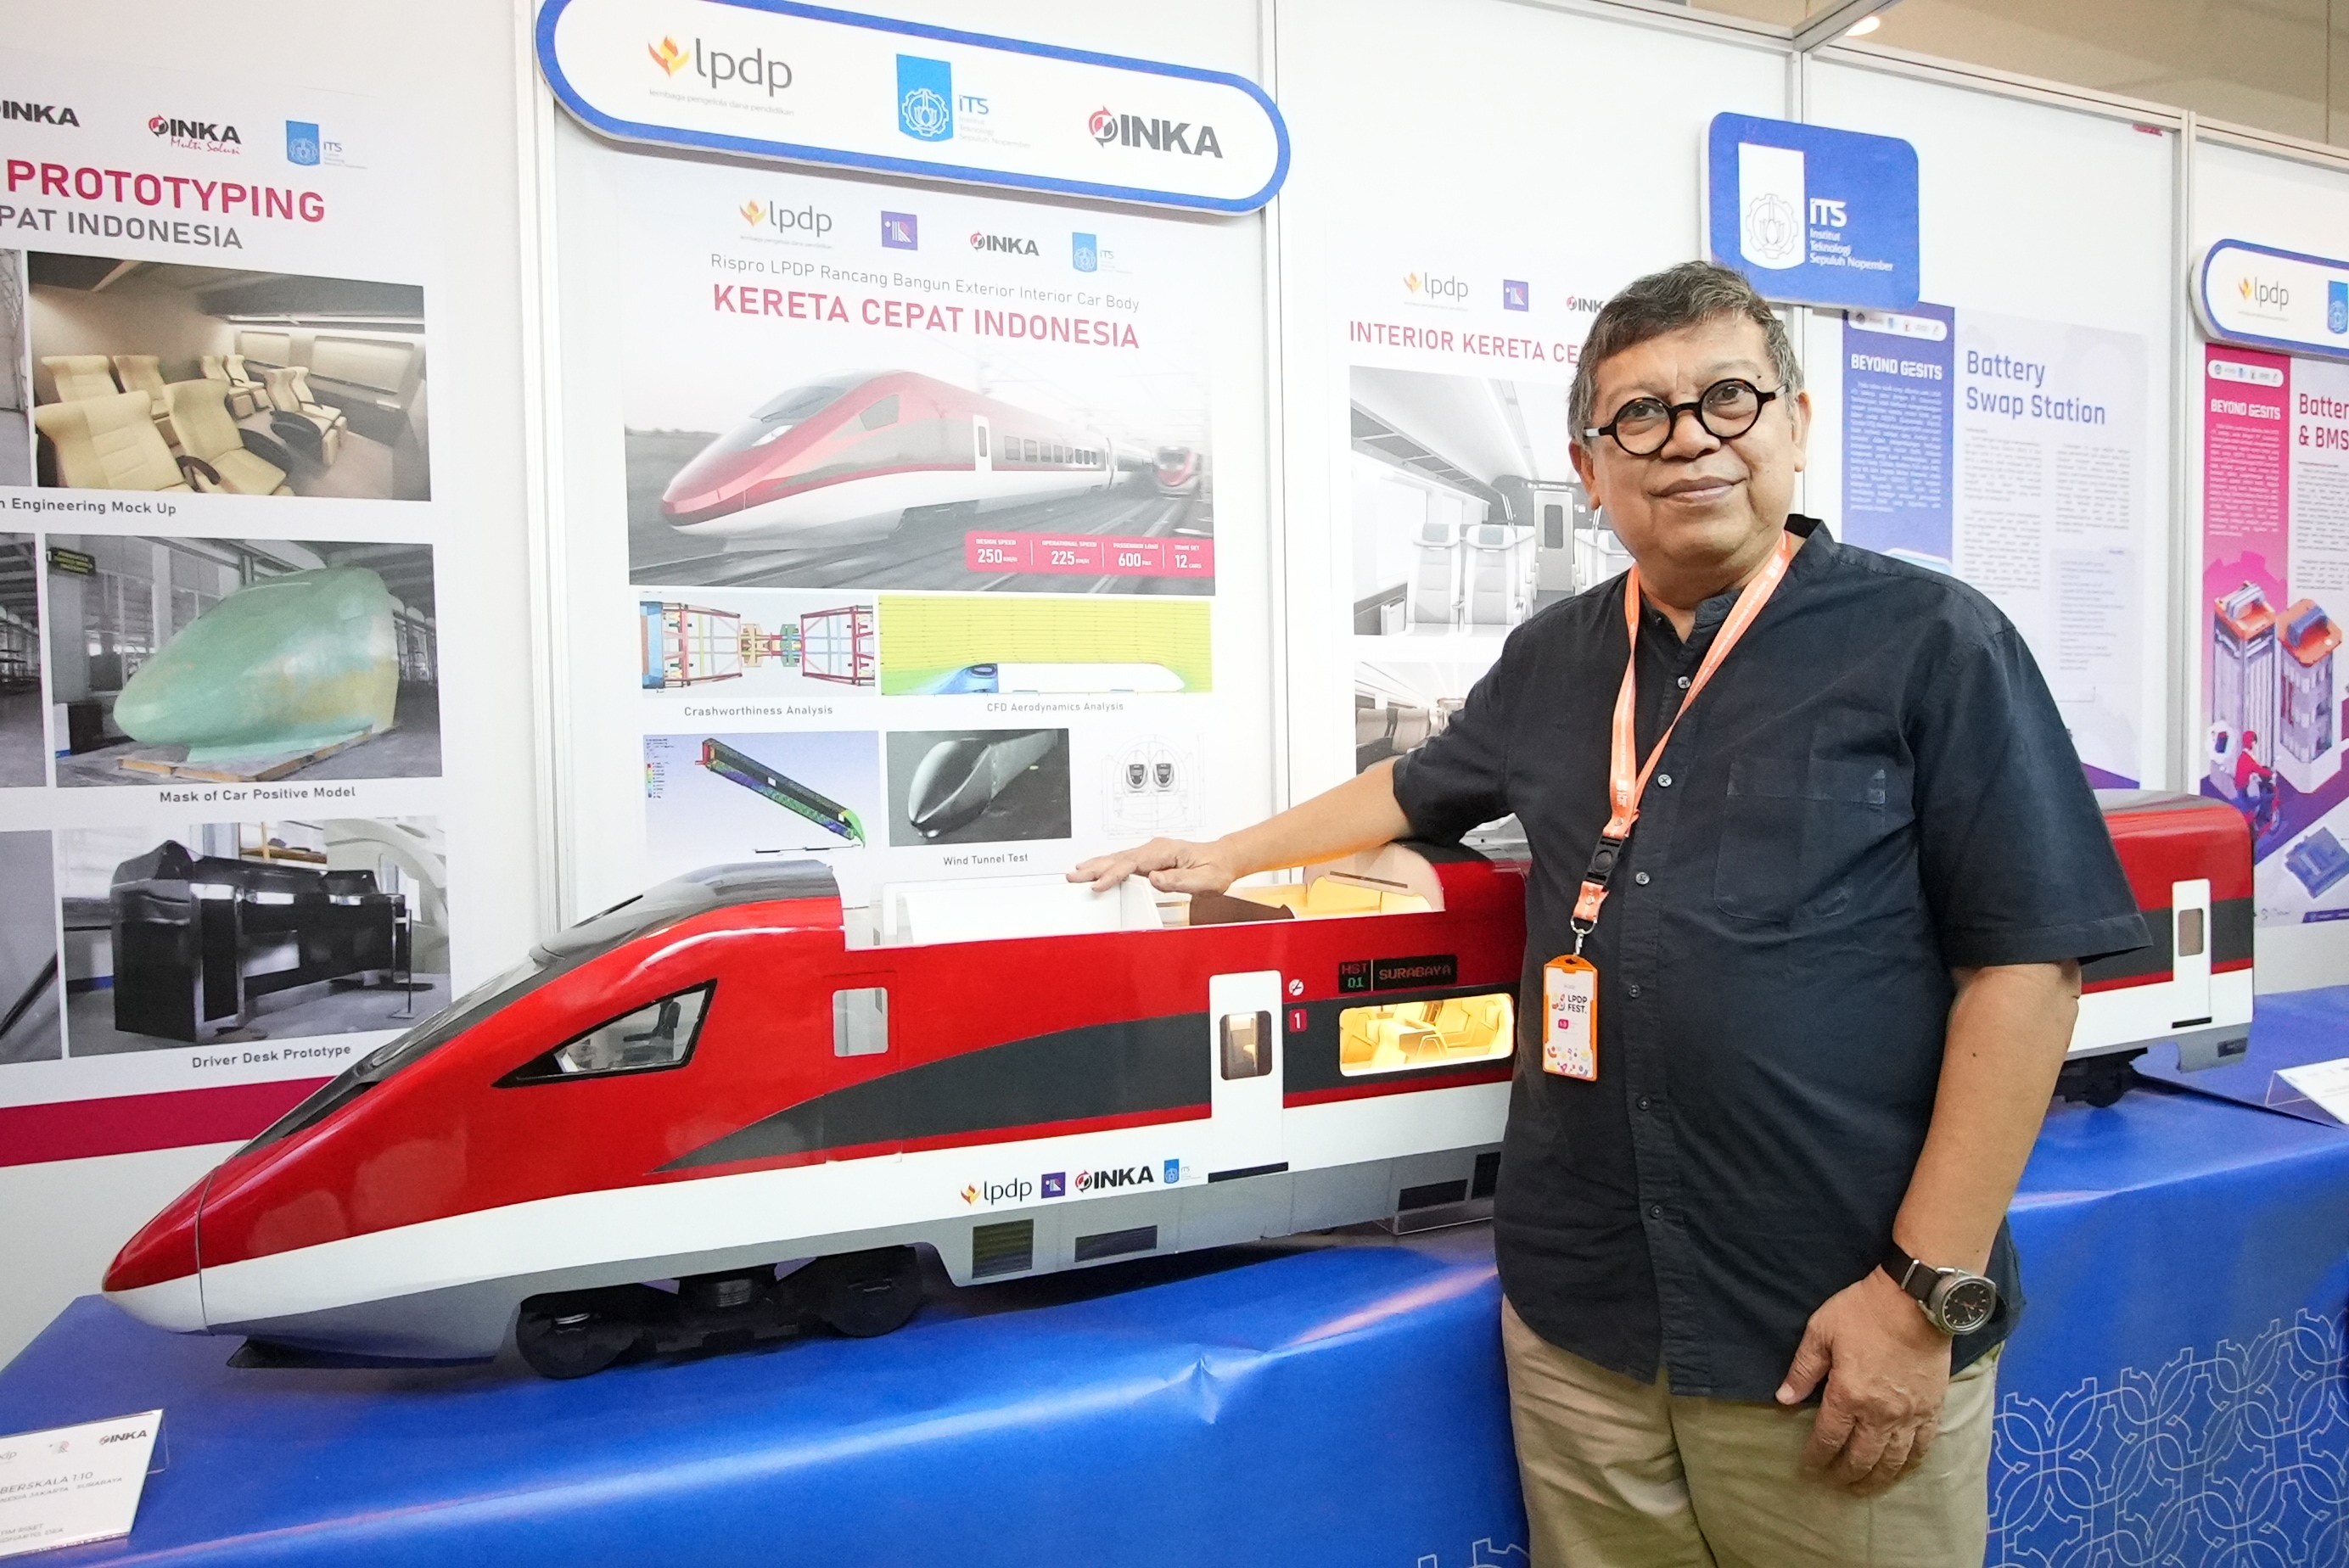 Melihat Prototipe Kereta Cepat Jakarta - Surabaya Buatan Anak Bangsa